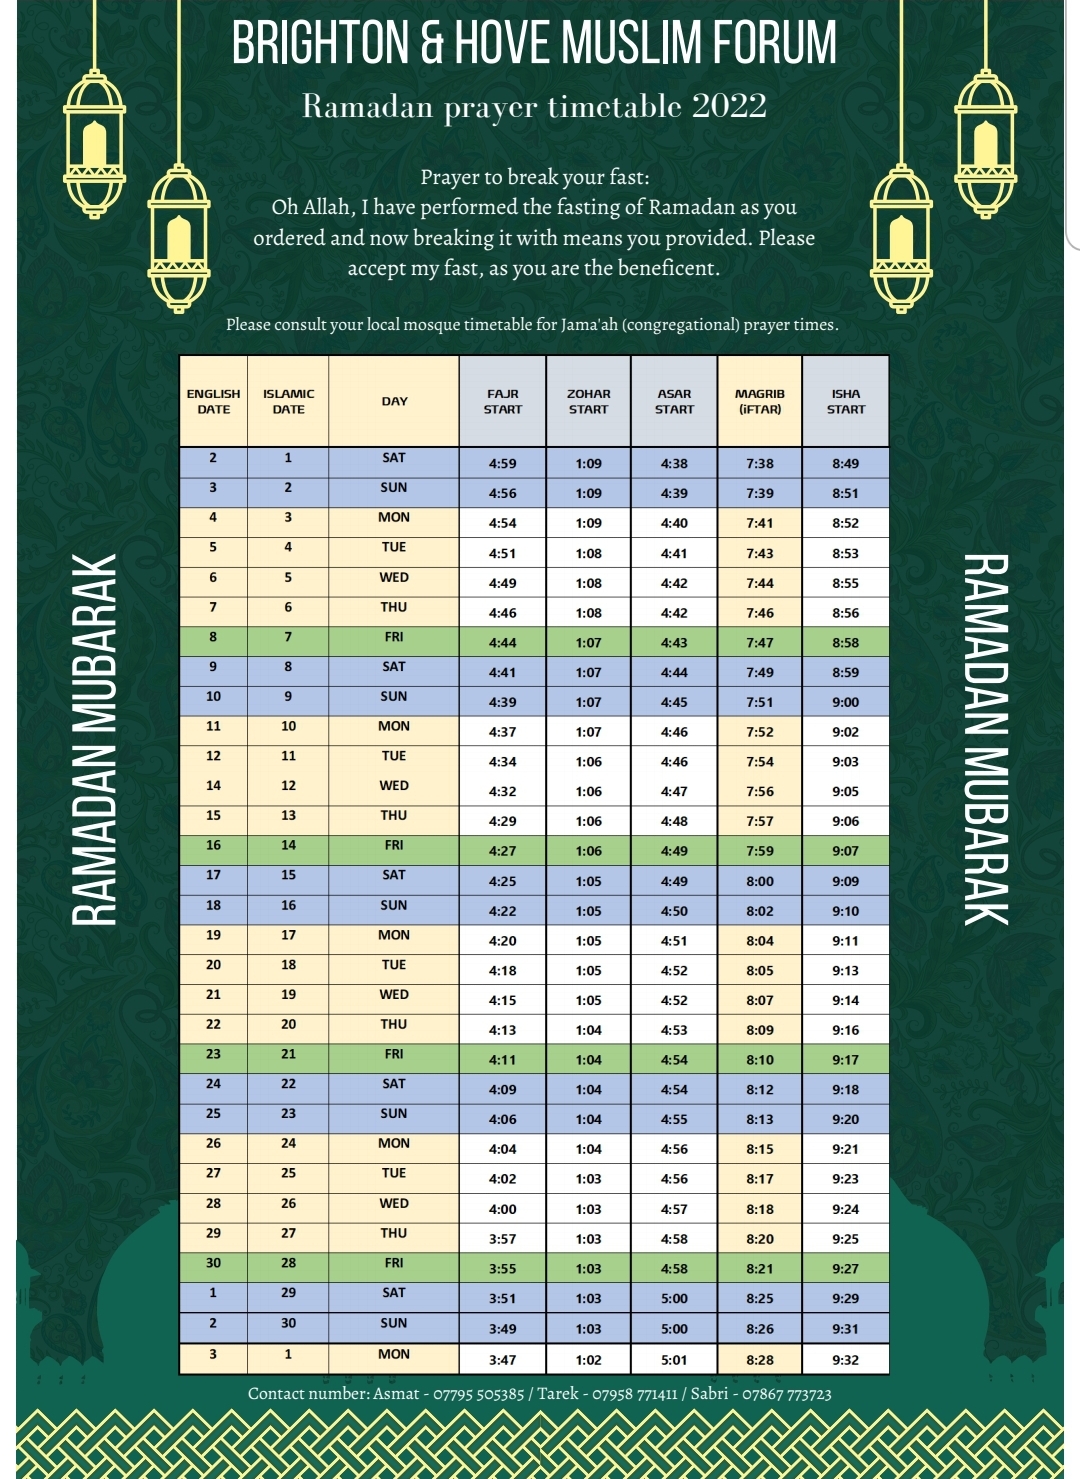 Ramadan Prayer Timetable 2022 - Brighton & Hove Muslim Forum